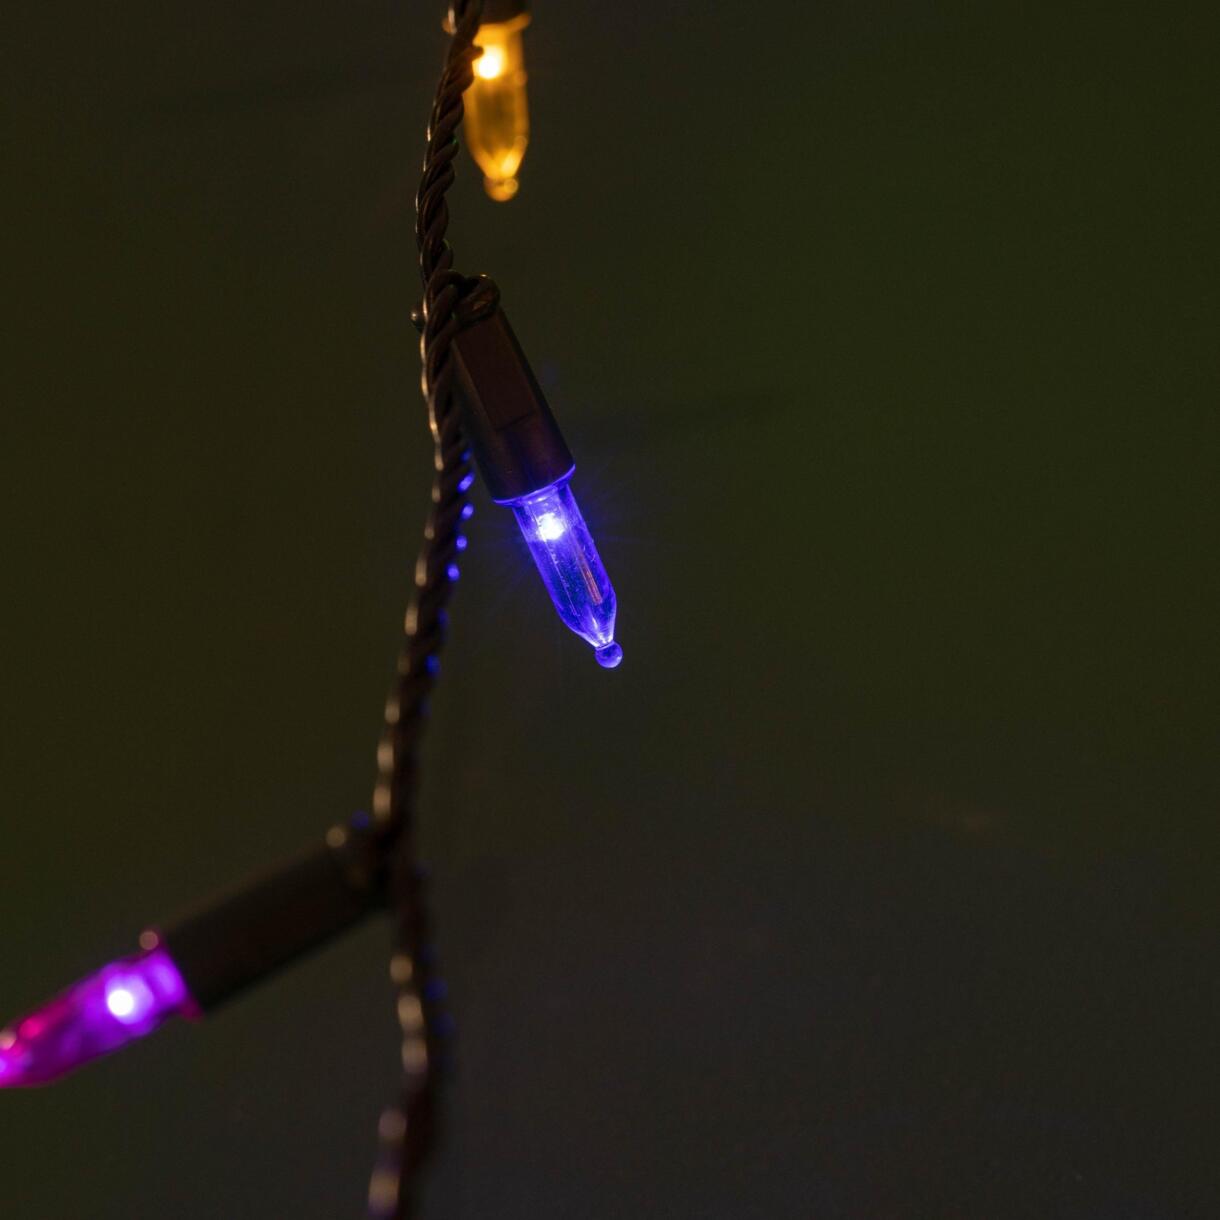 Ghirlanda luminosa 12 m Multicolore 120 LED CV 1